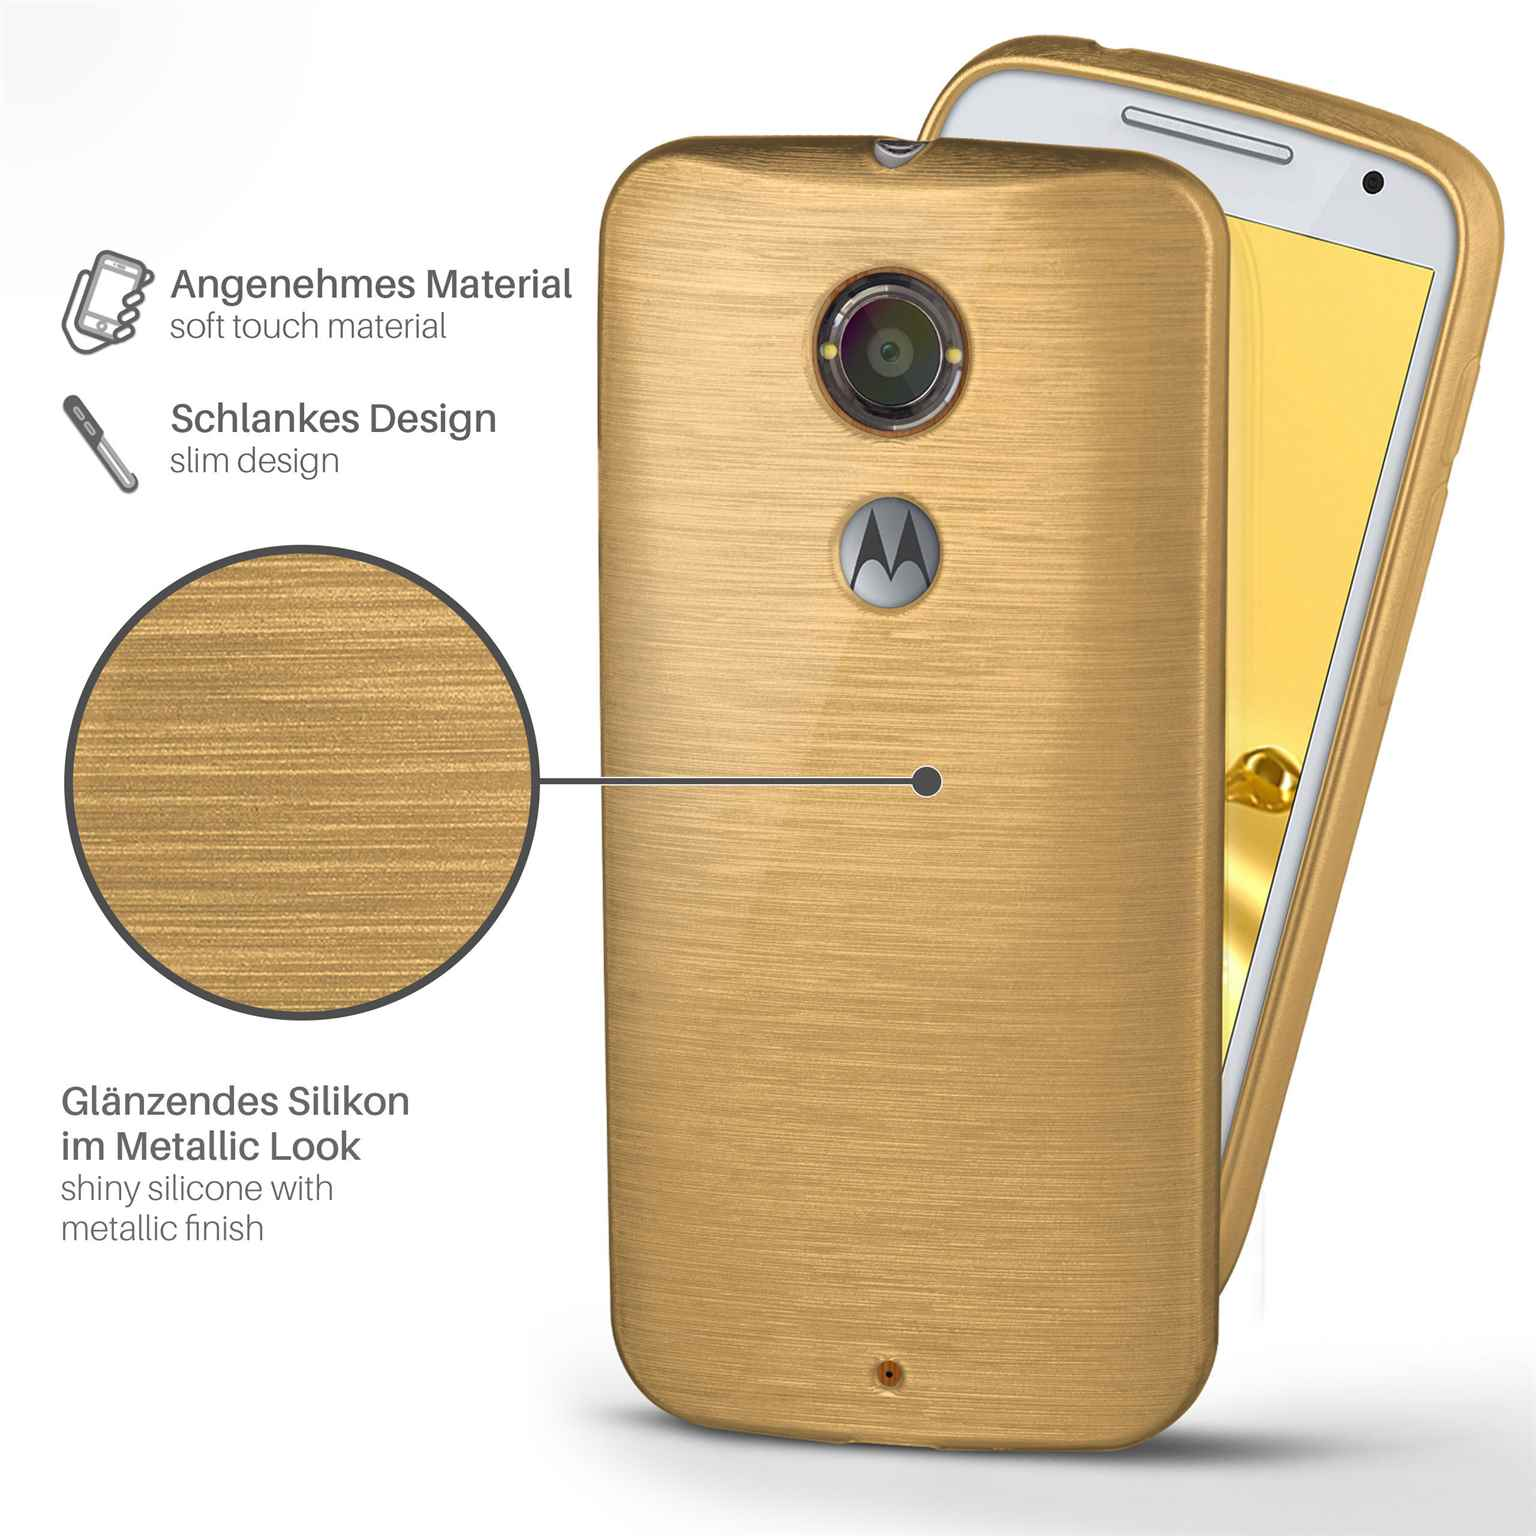 Backcover, Moto Motorola, MOEX X2, Case, Brushed Ivory-Gold